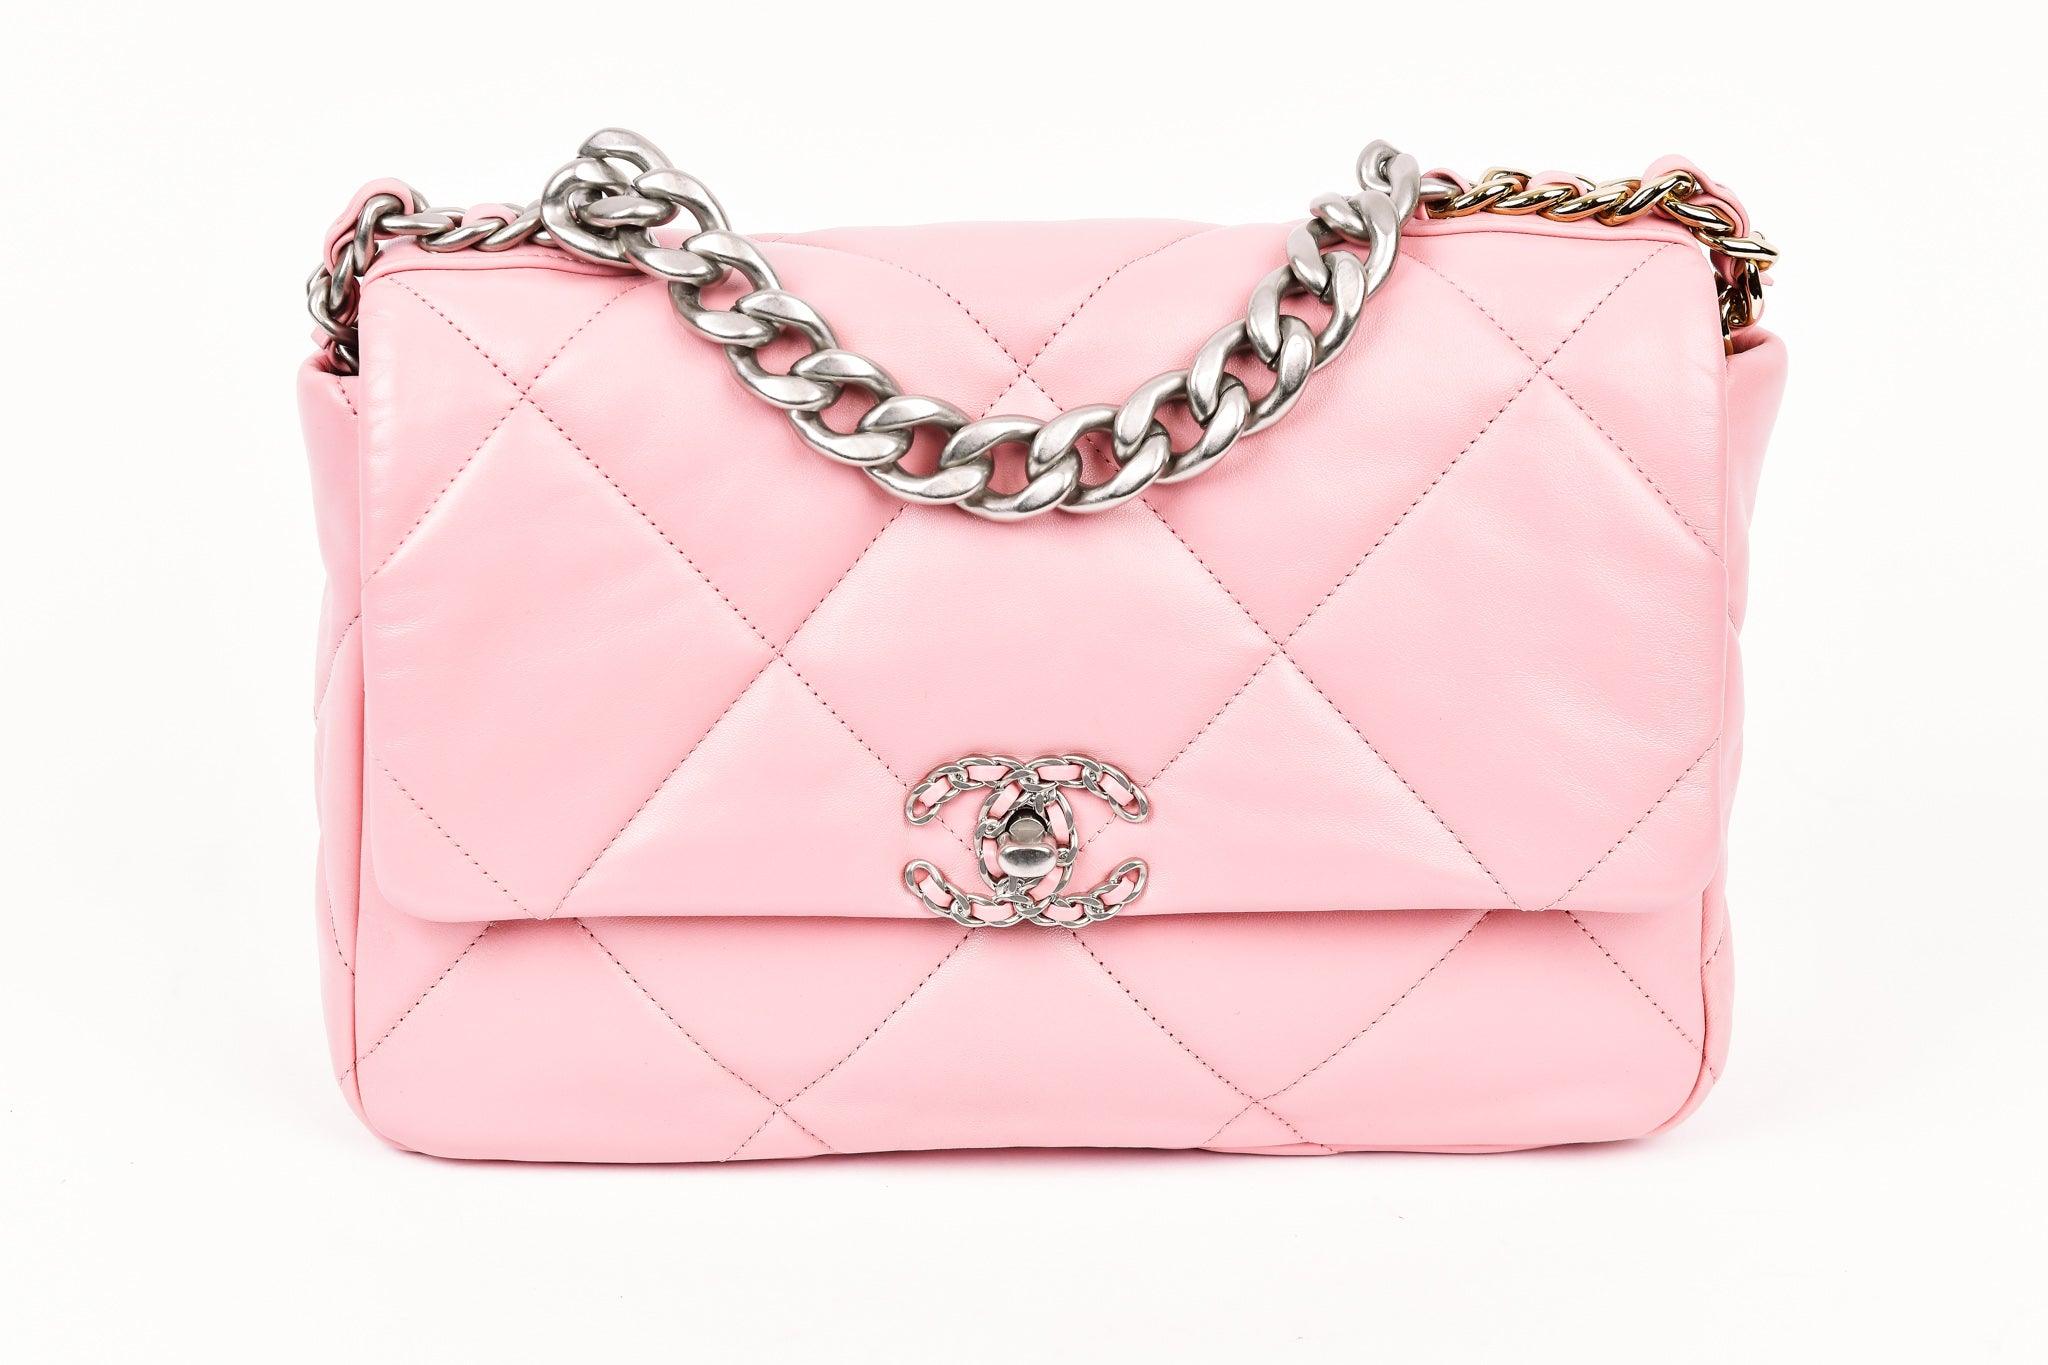 Chanel Pink Flap Bag, Shoulder Strap Bag